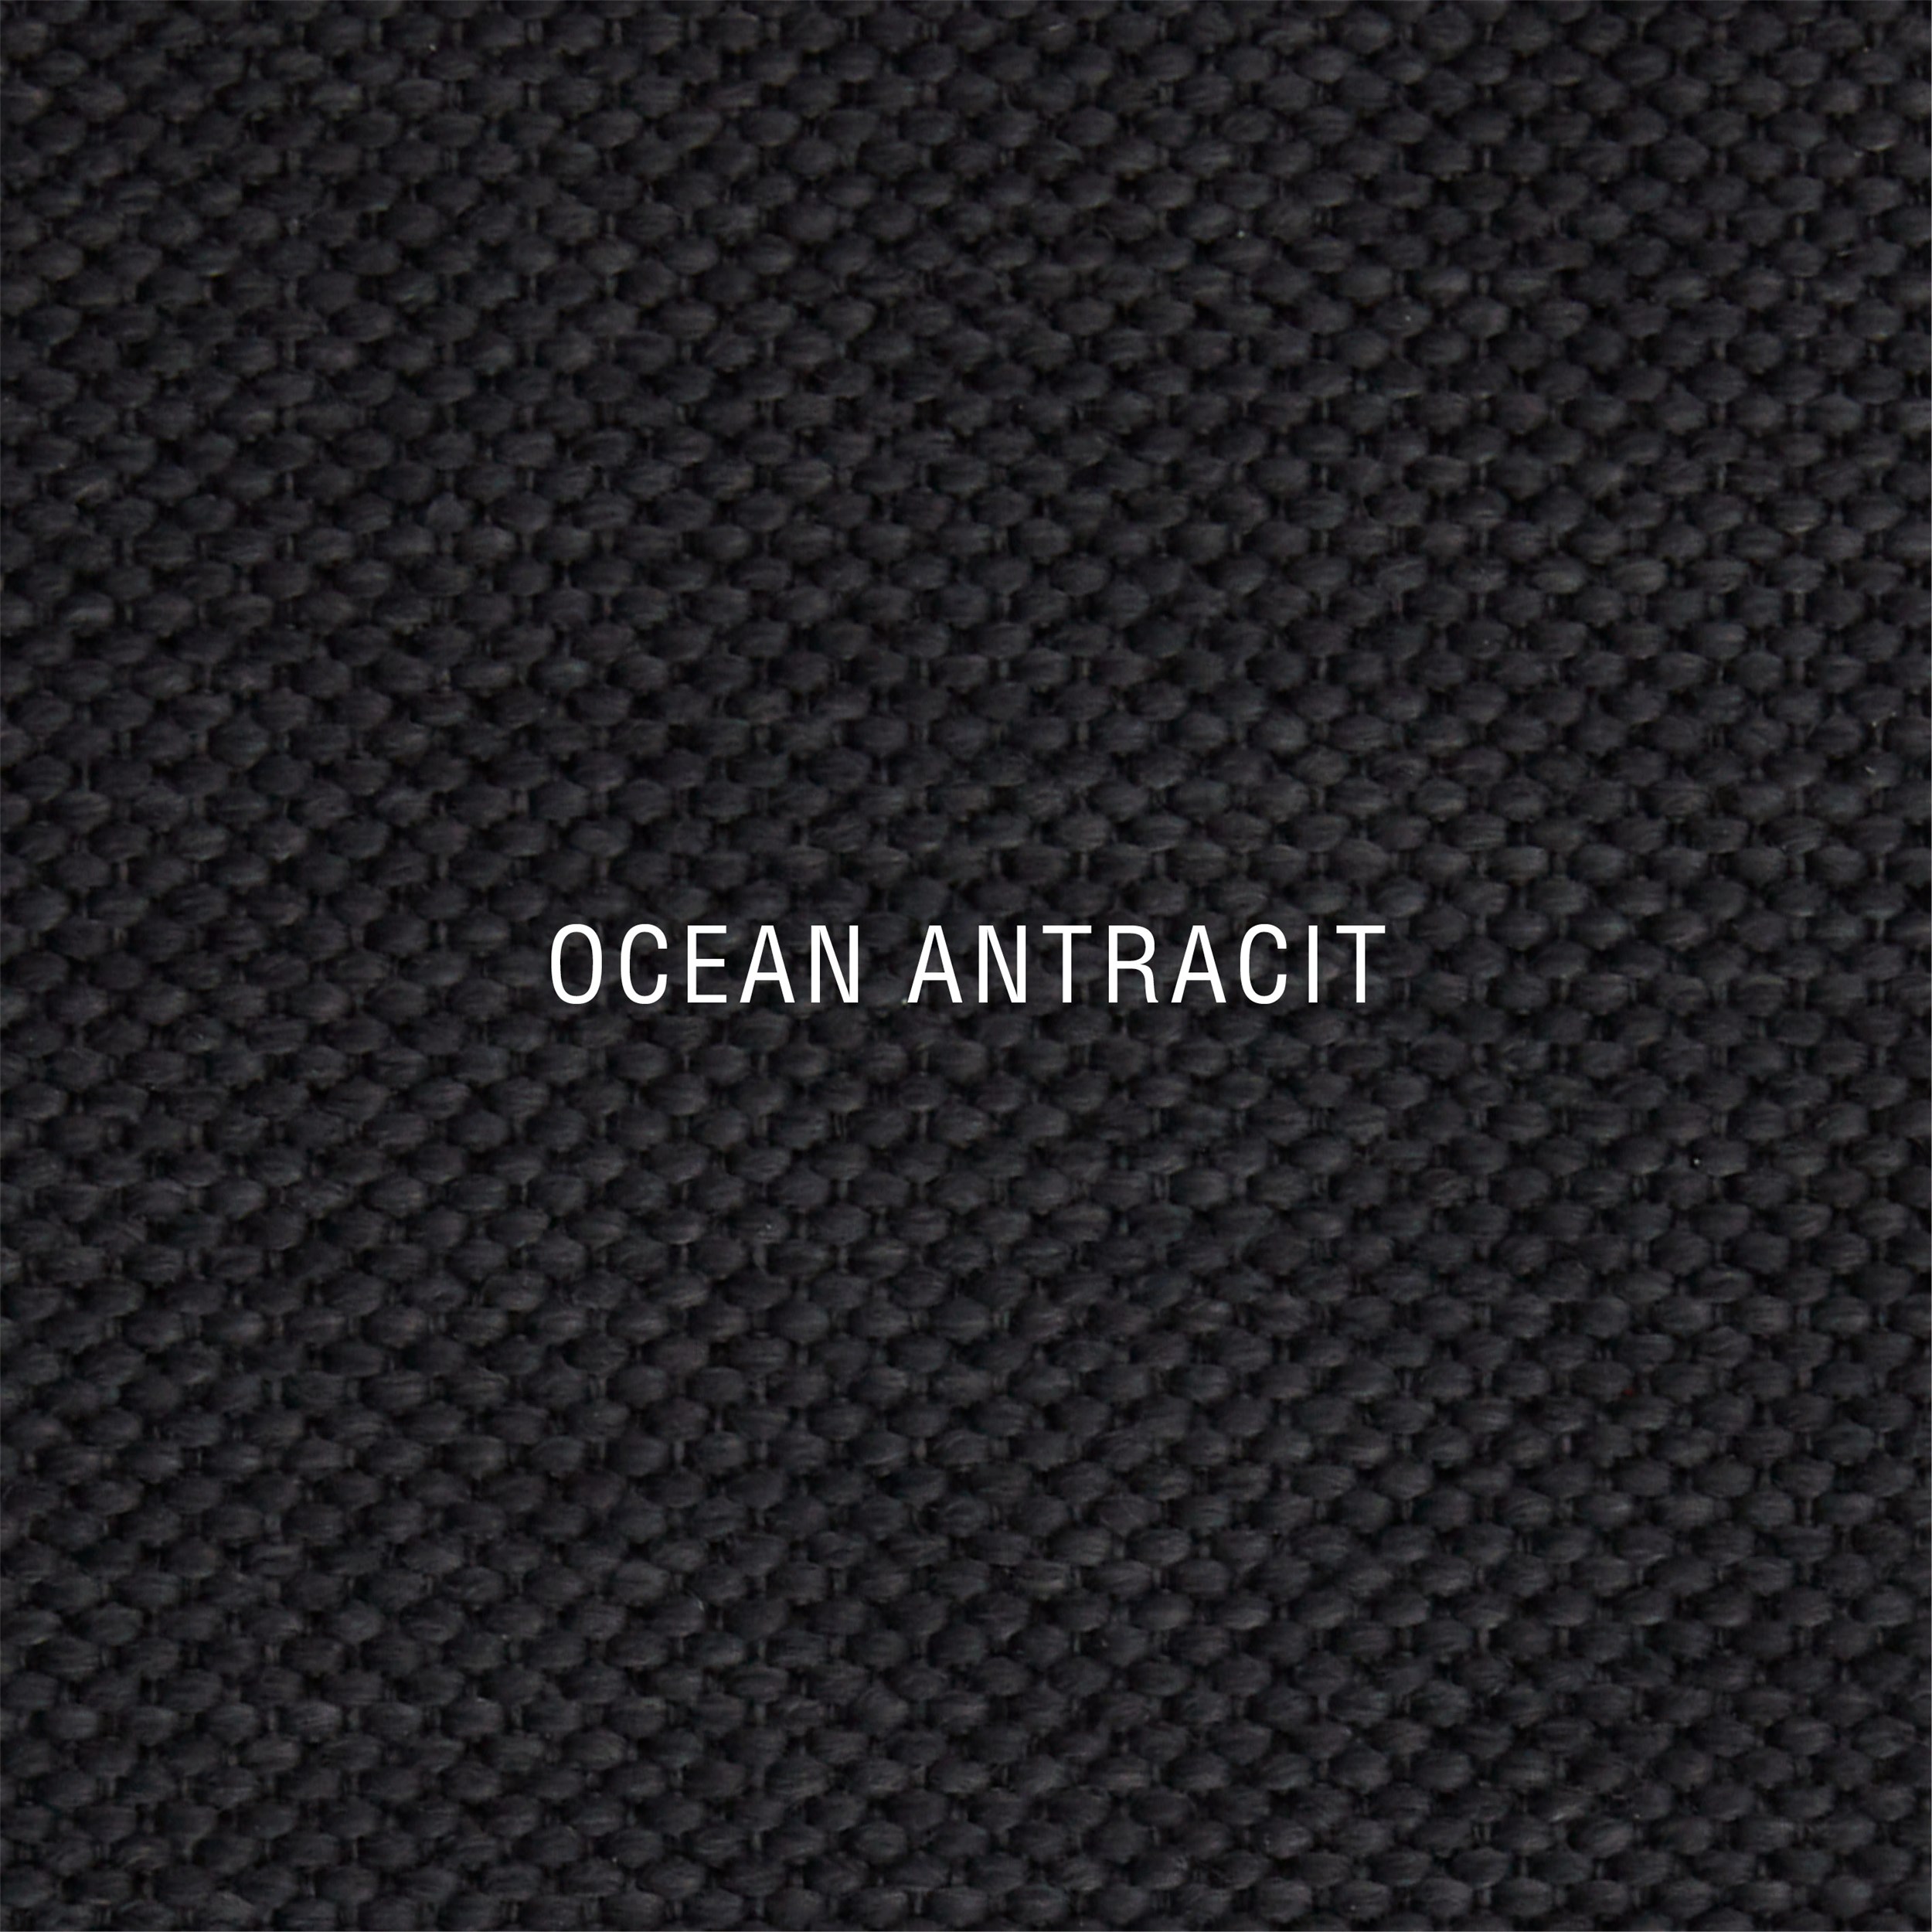 Nocturne Exclusive Ocean Inkl. 8 cm Exclusive topmadras, 2 x 90 x 200 cm bokselevationsseng